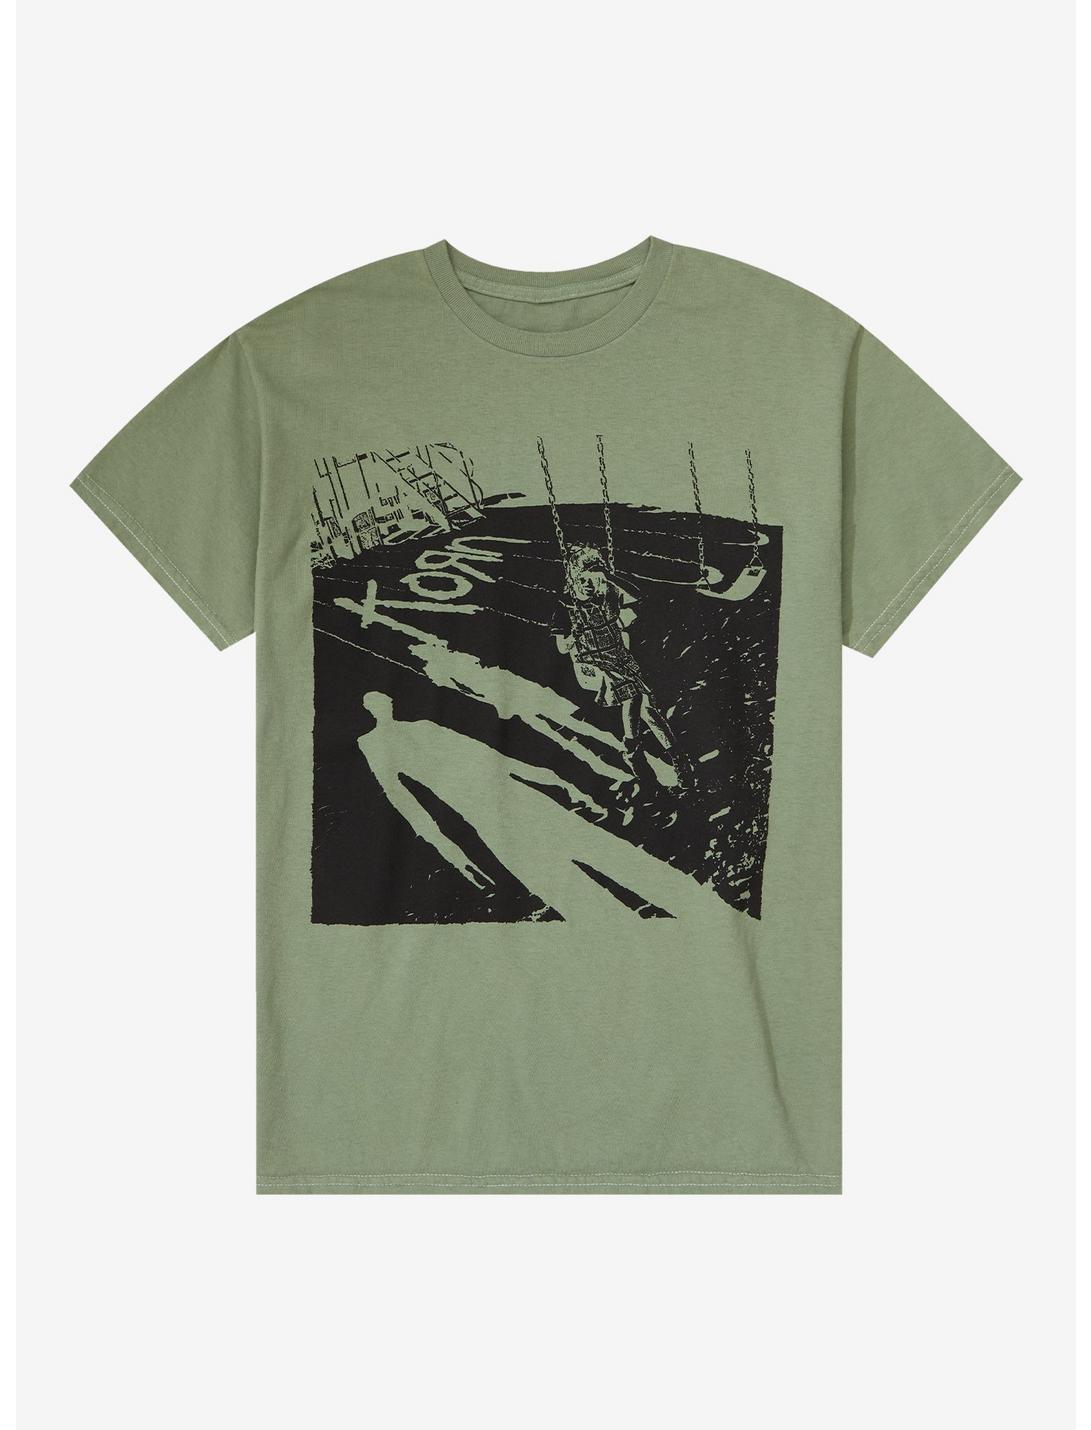 Korn Self-Titled Album Cover Green T-Shirt, SAGE, hi-res